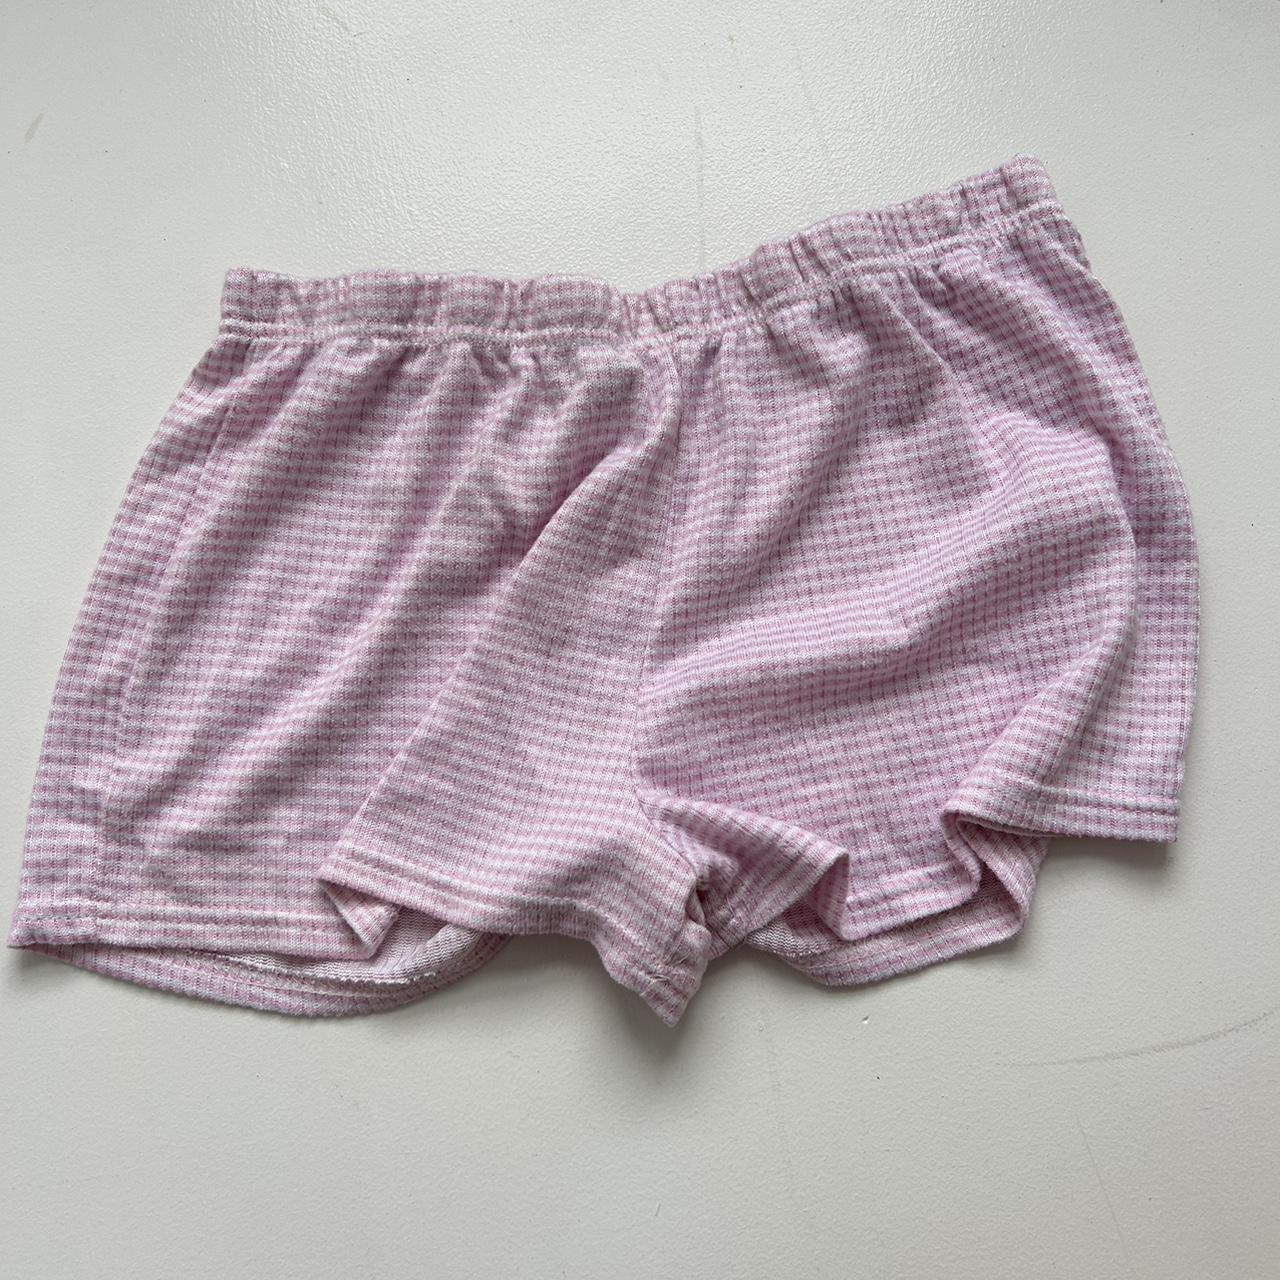 Brandy Melville Striped Shorts #brandy... - Depop